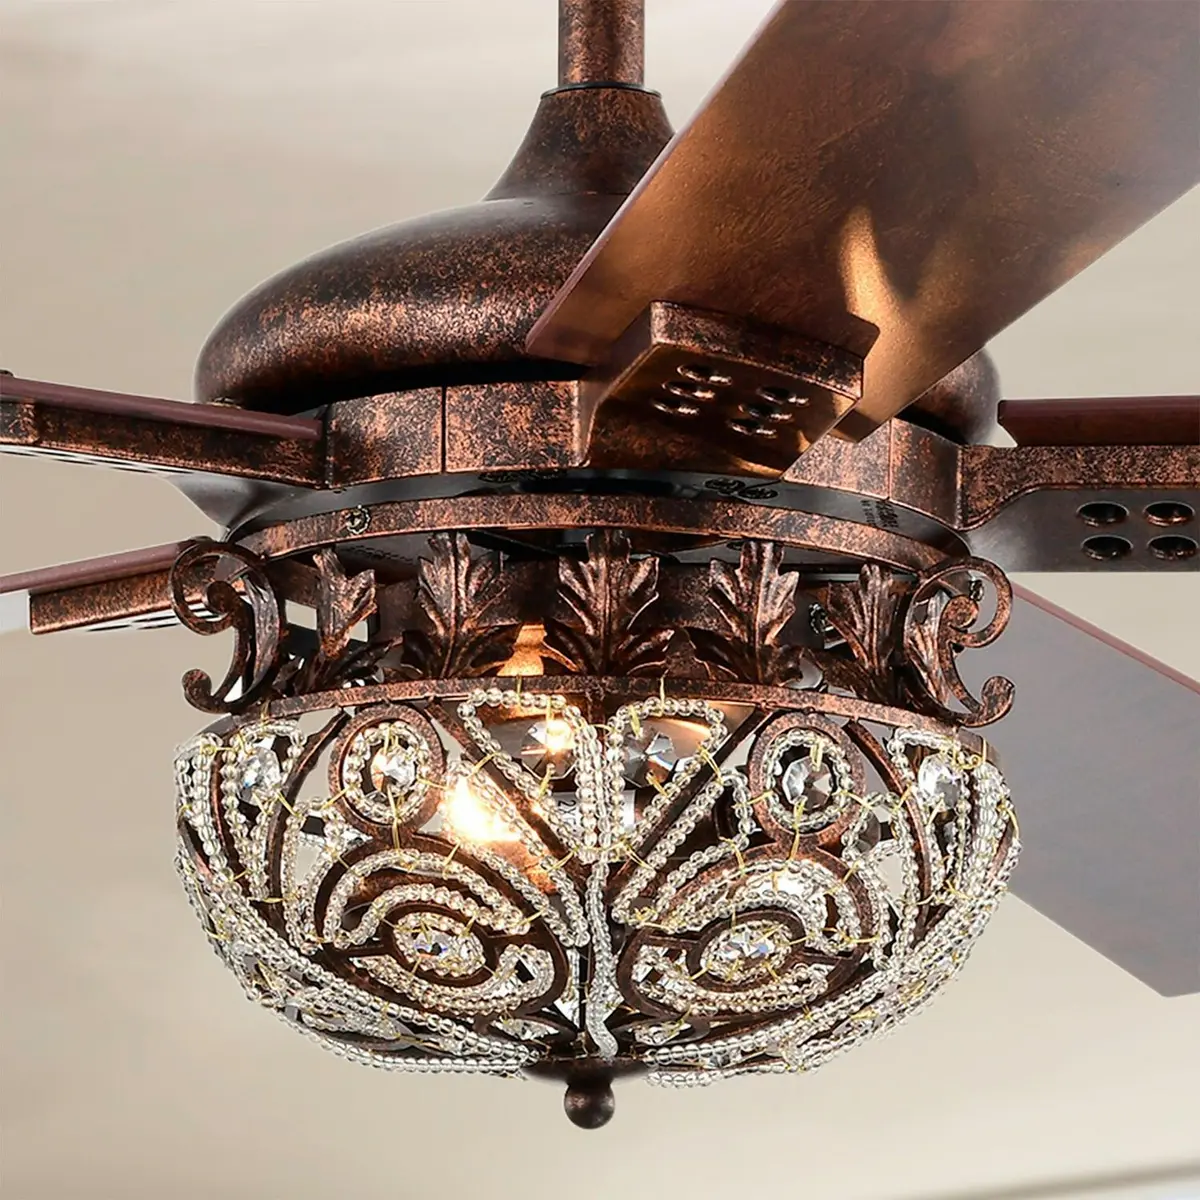 Antique Copper Ceiling Fan